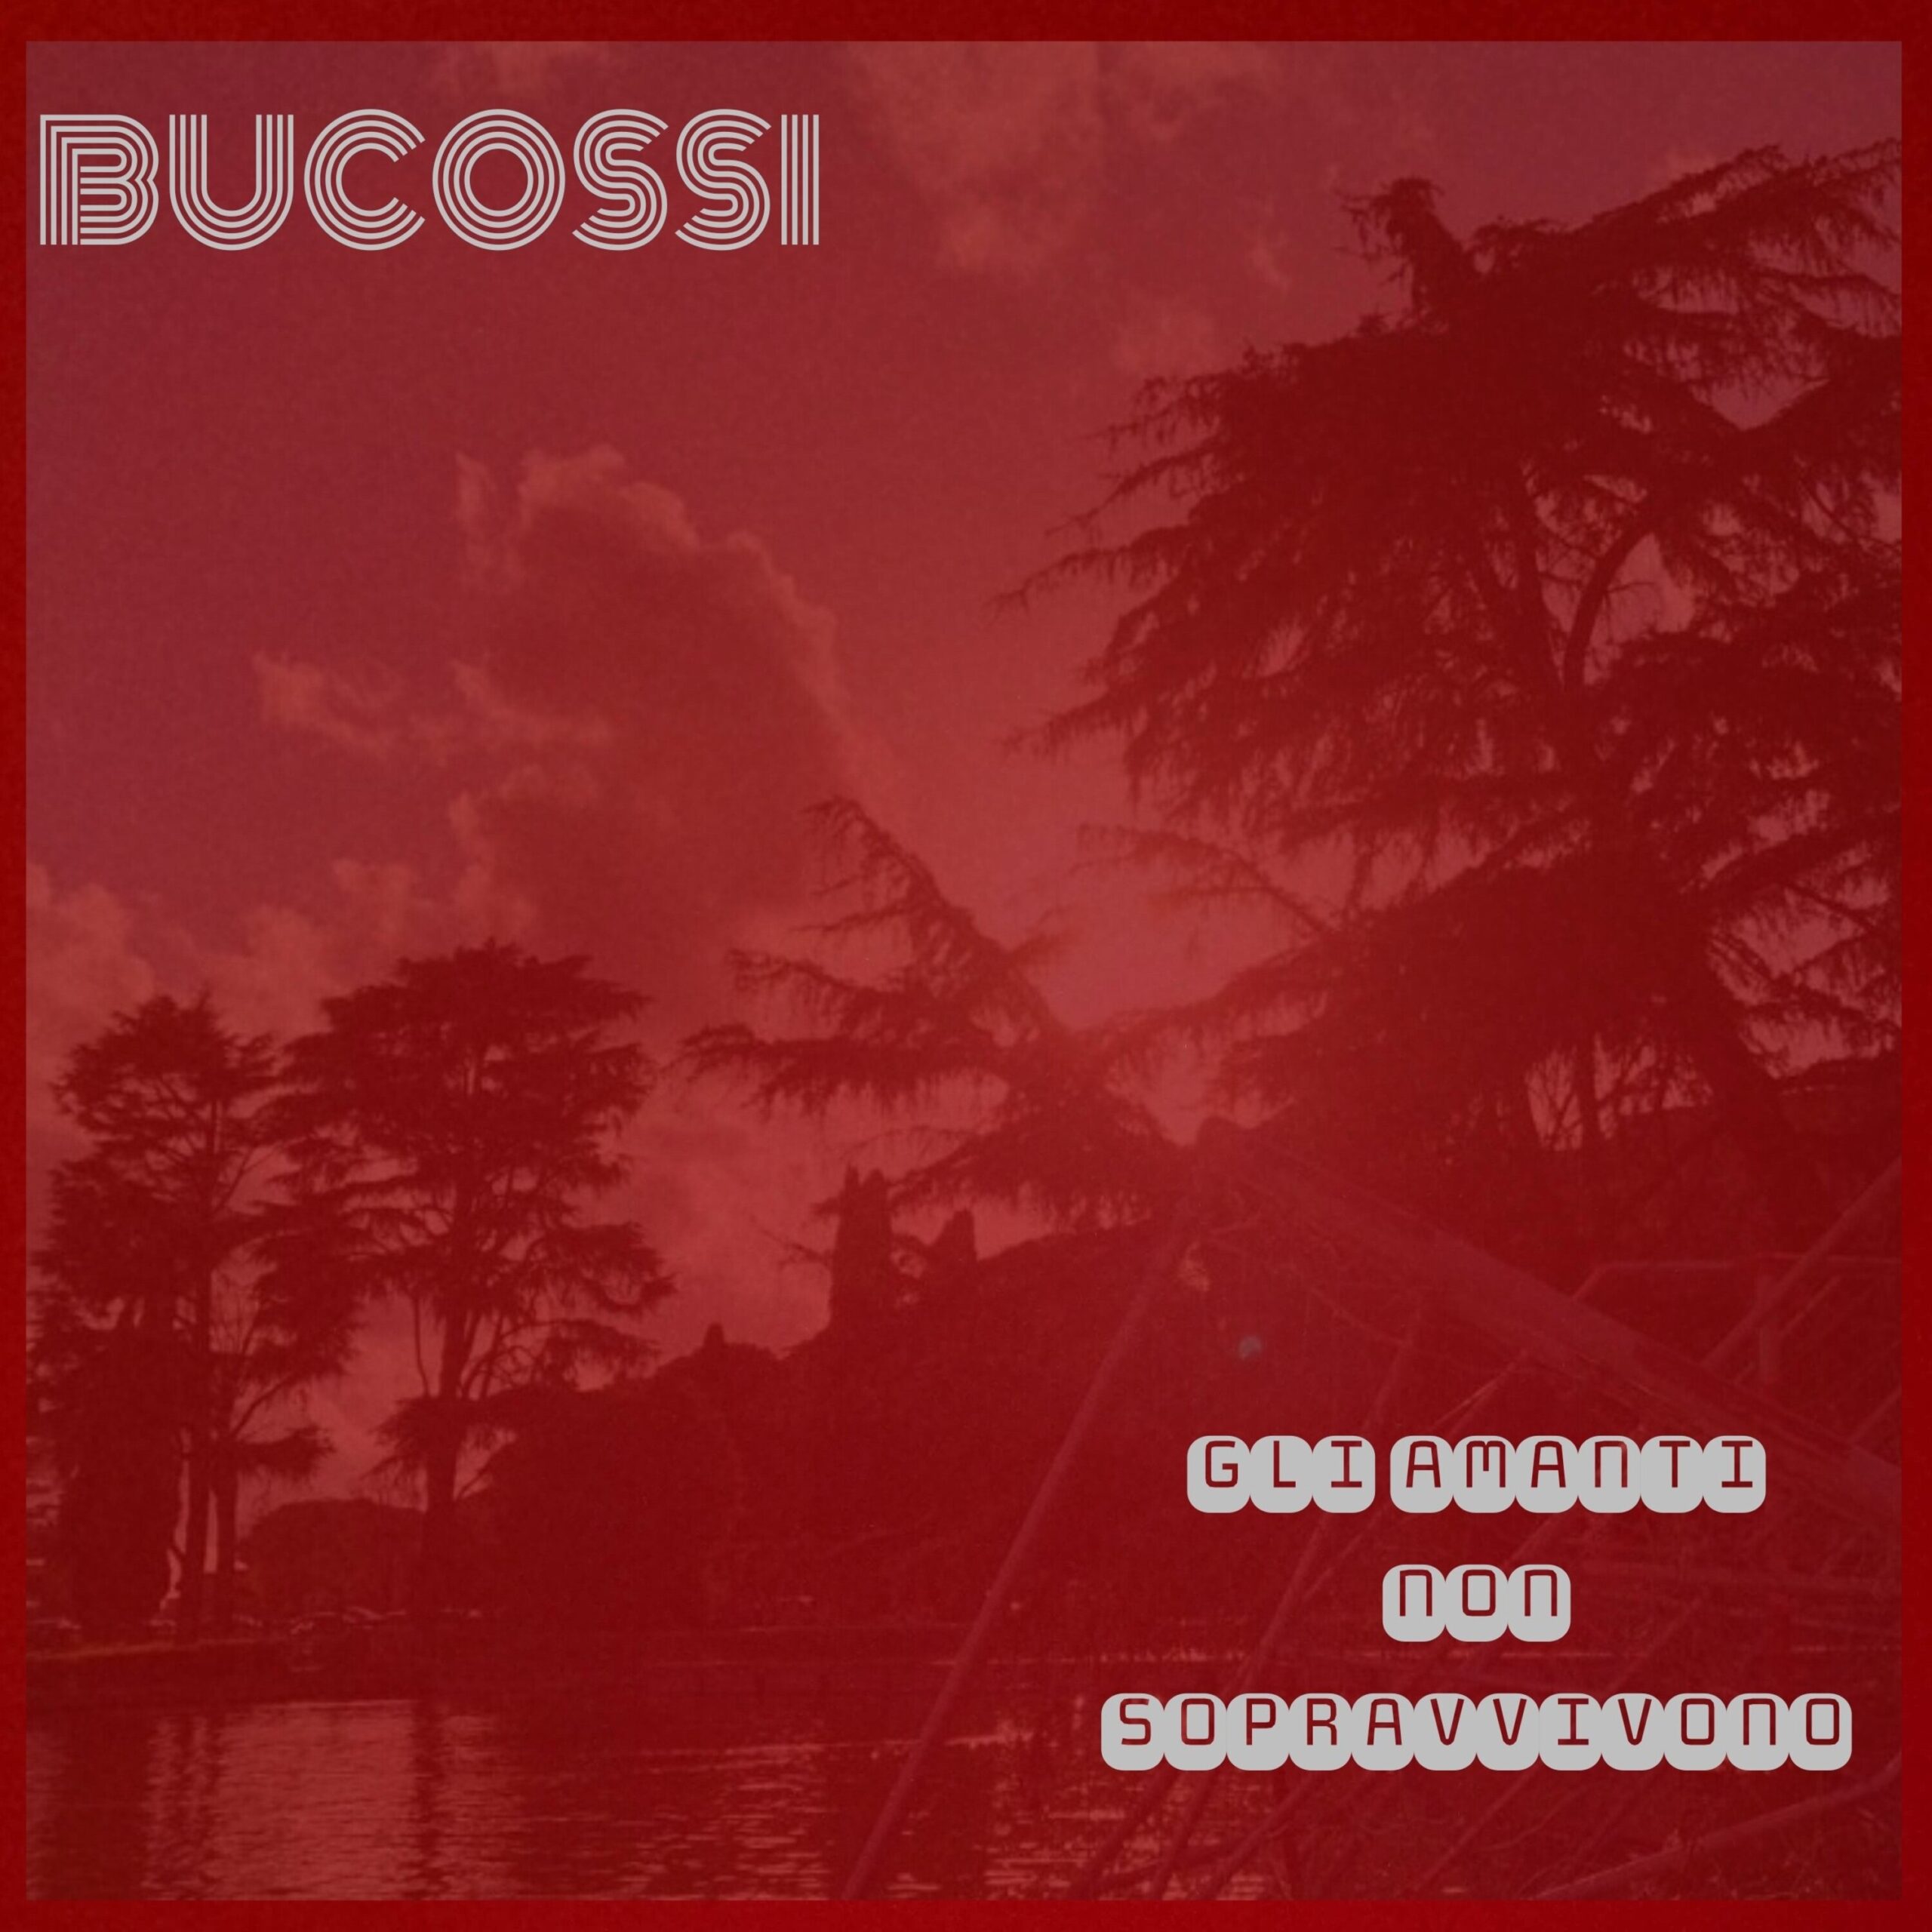 “Gli amanti non sopravvivono” e’ il nuovo singolo di Bucossi